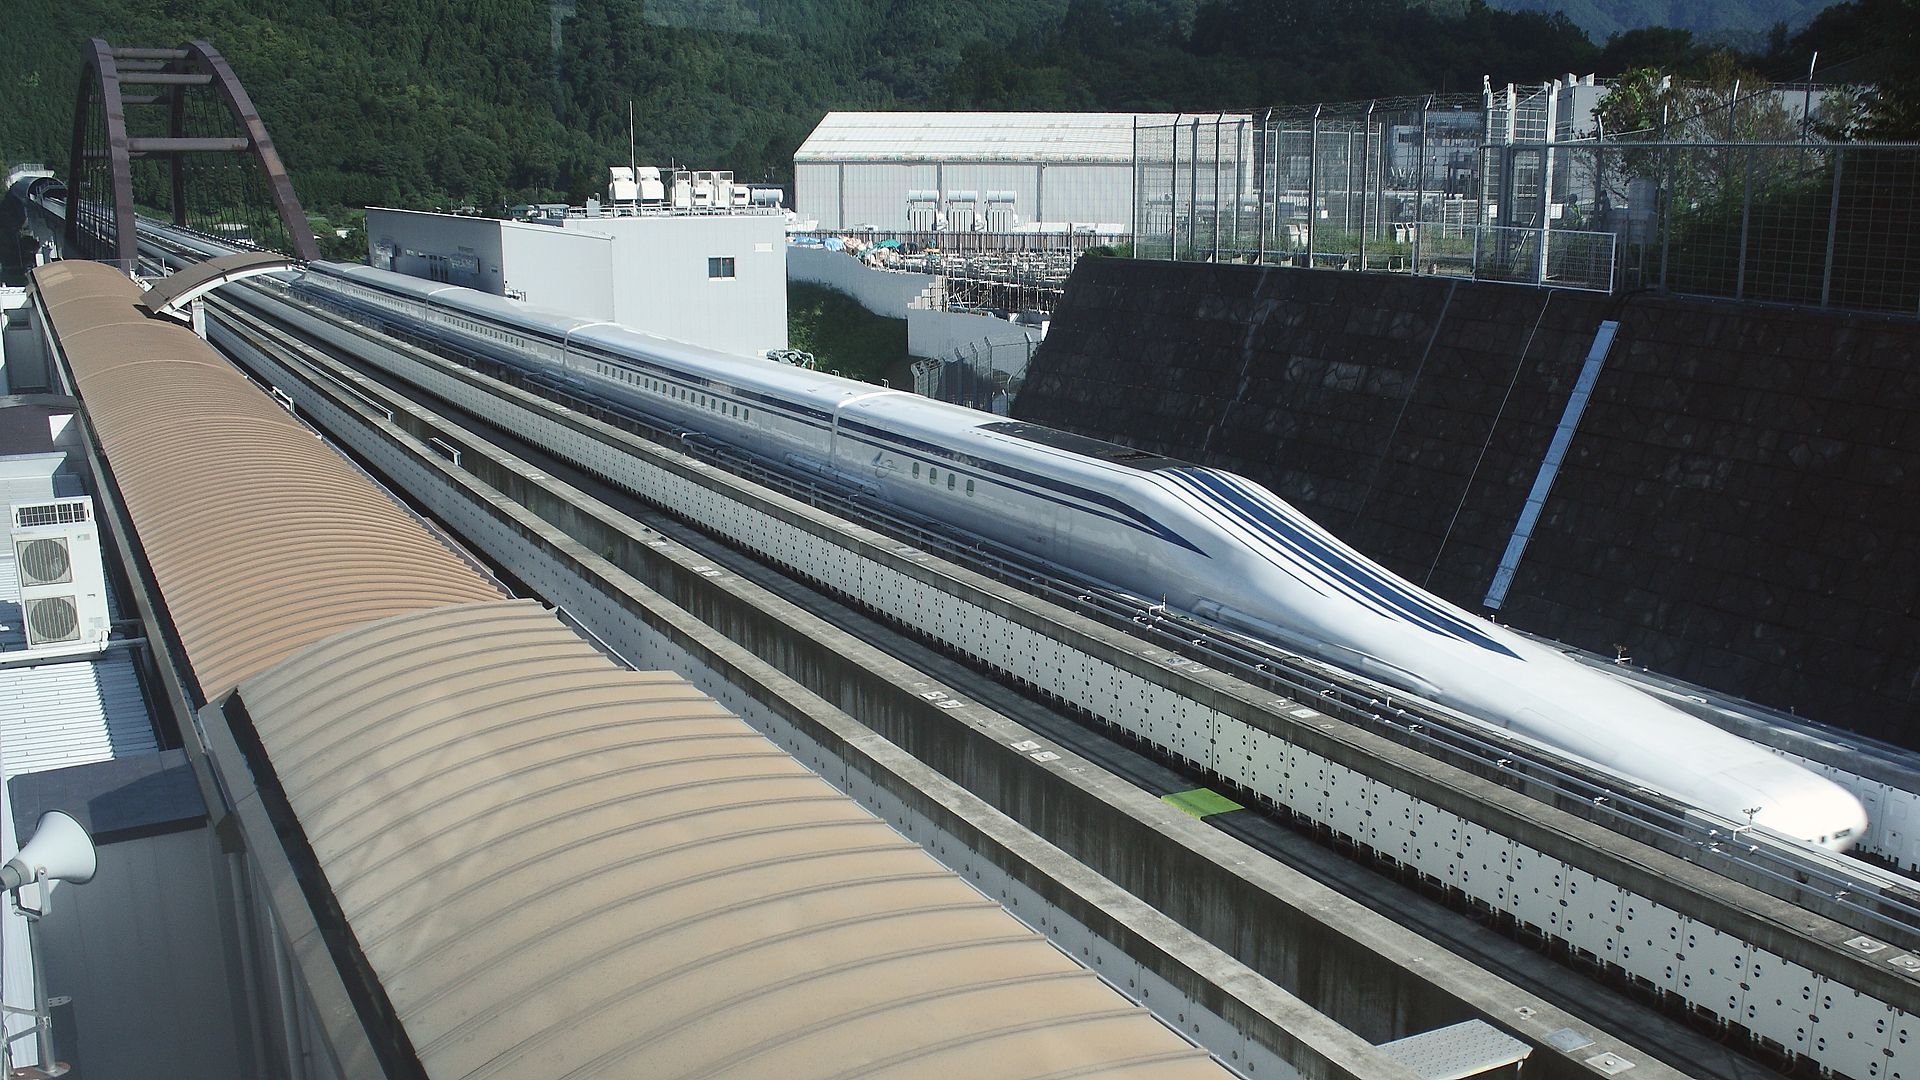 자기부상열차는 전기 저항을 이용한 자기력으로 차체를 레일에서 띄워 열차를 빠르게 움직이도록 하는 이동 수단이다. 초전도 현상을 이용해 강력한 전자석을 만들면 자기부상열차를 더 빨리 주행케 할 수 있다. 사진은 일본에서 개발된 초전도체 자기부상열차 모델. 위키피디아 제공